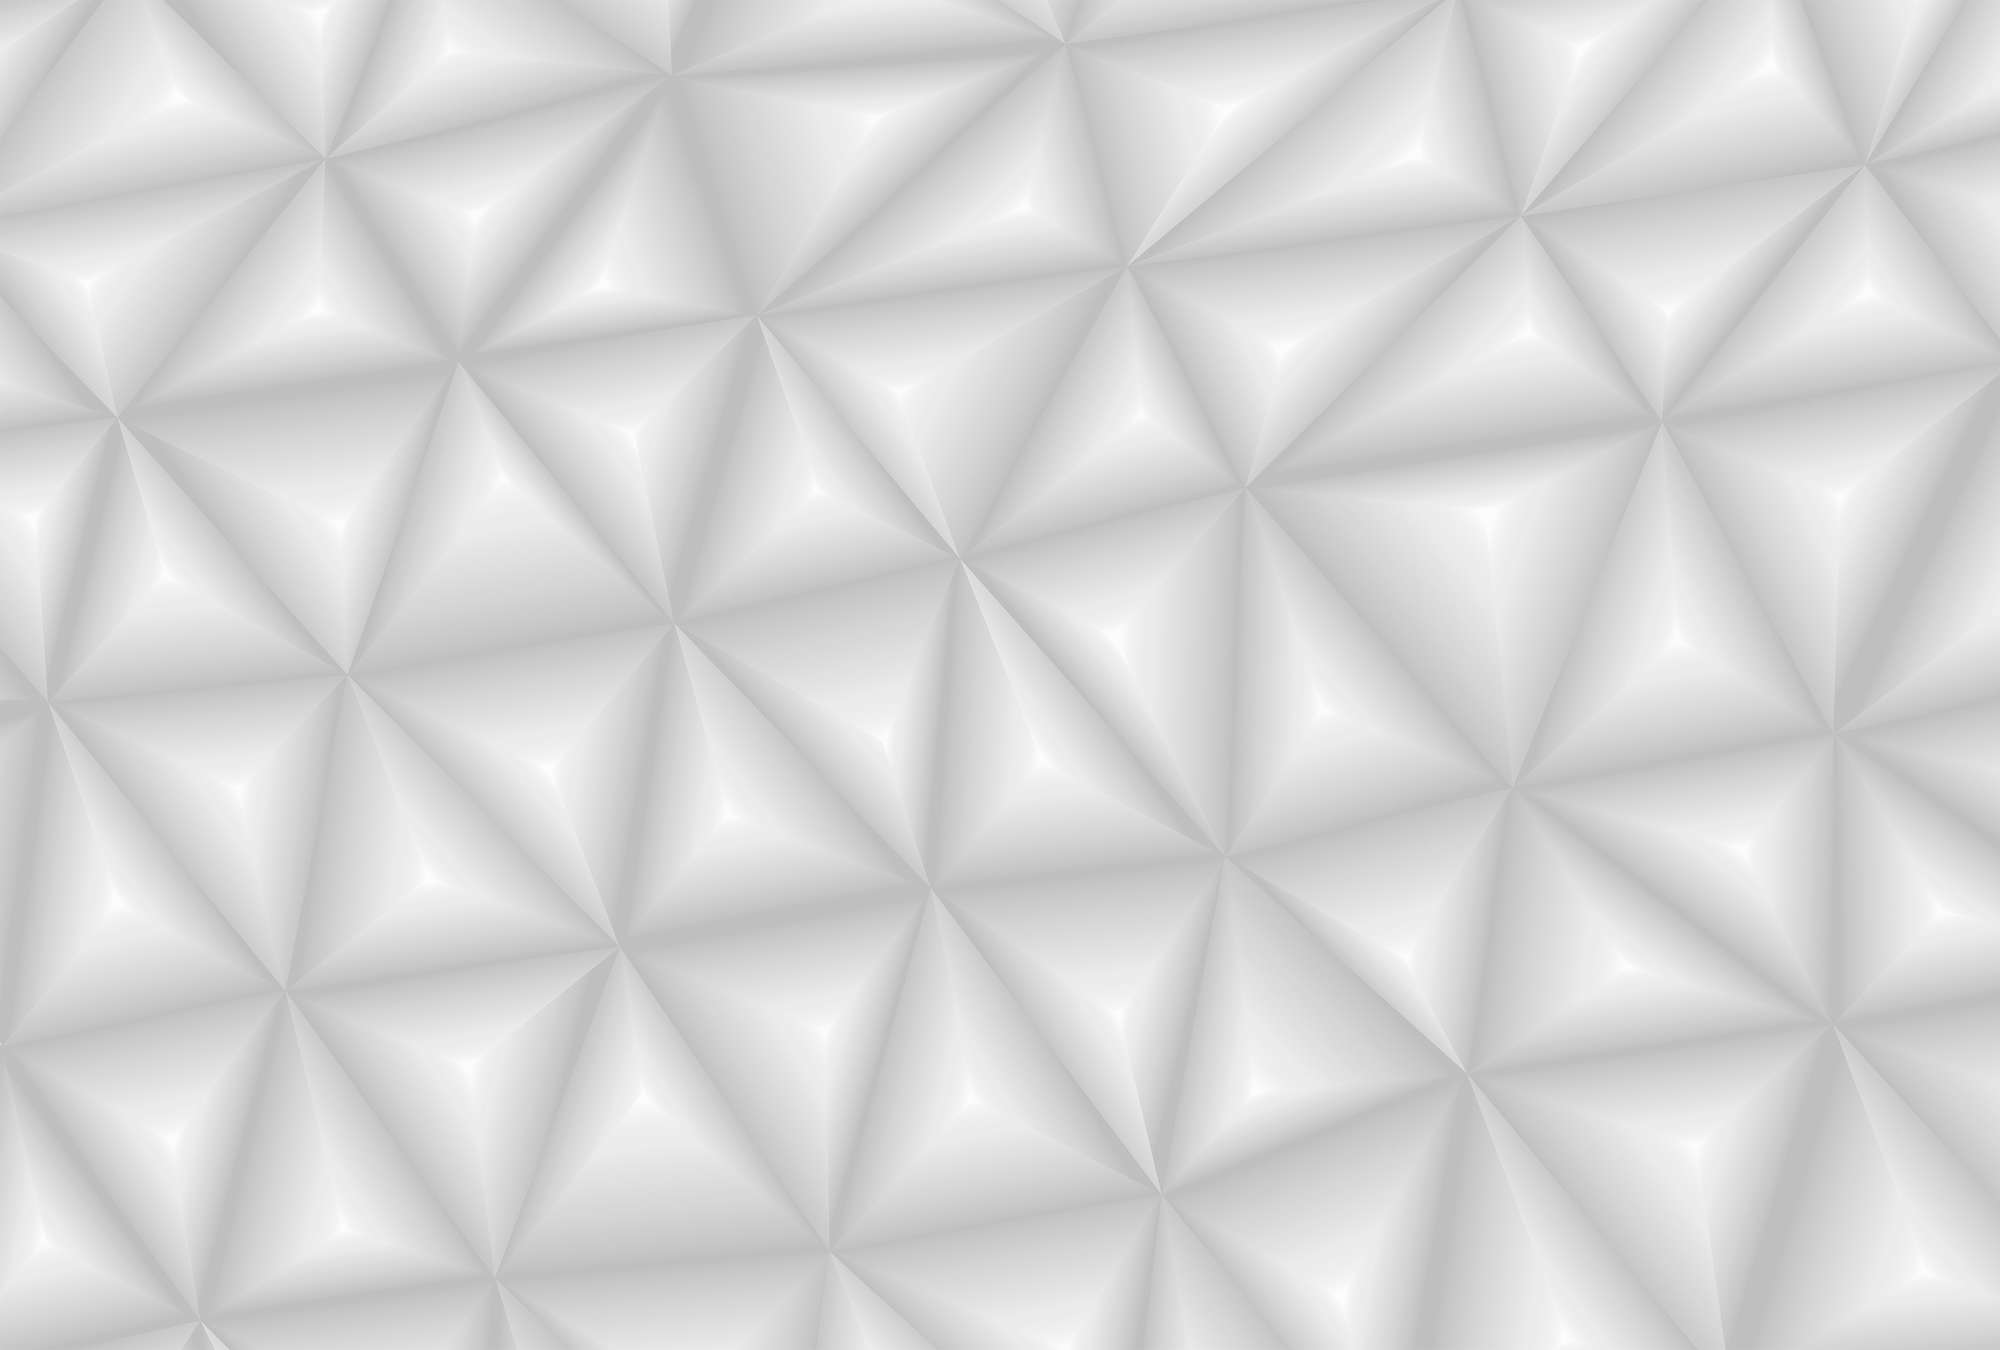             Papier peint 3D gris avec motif graphique triangulaire
        